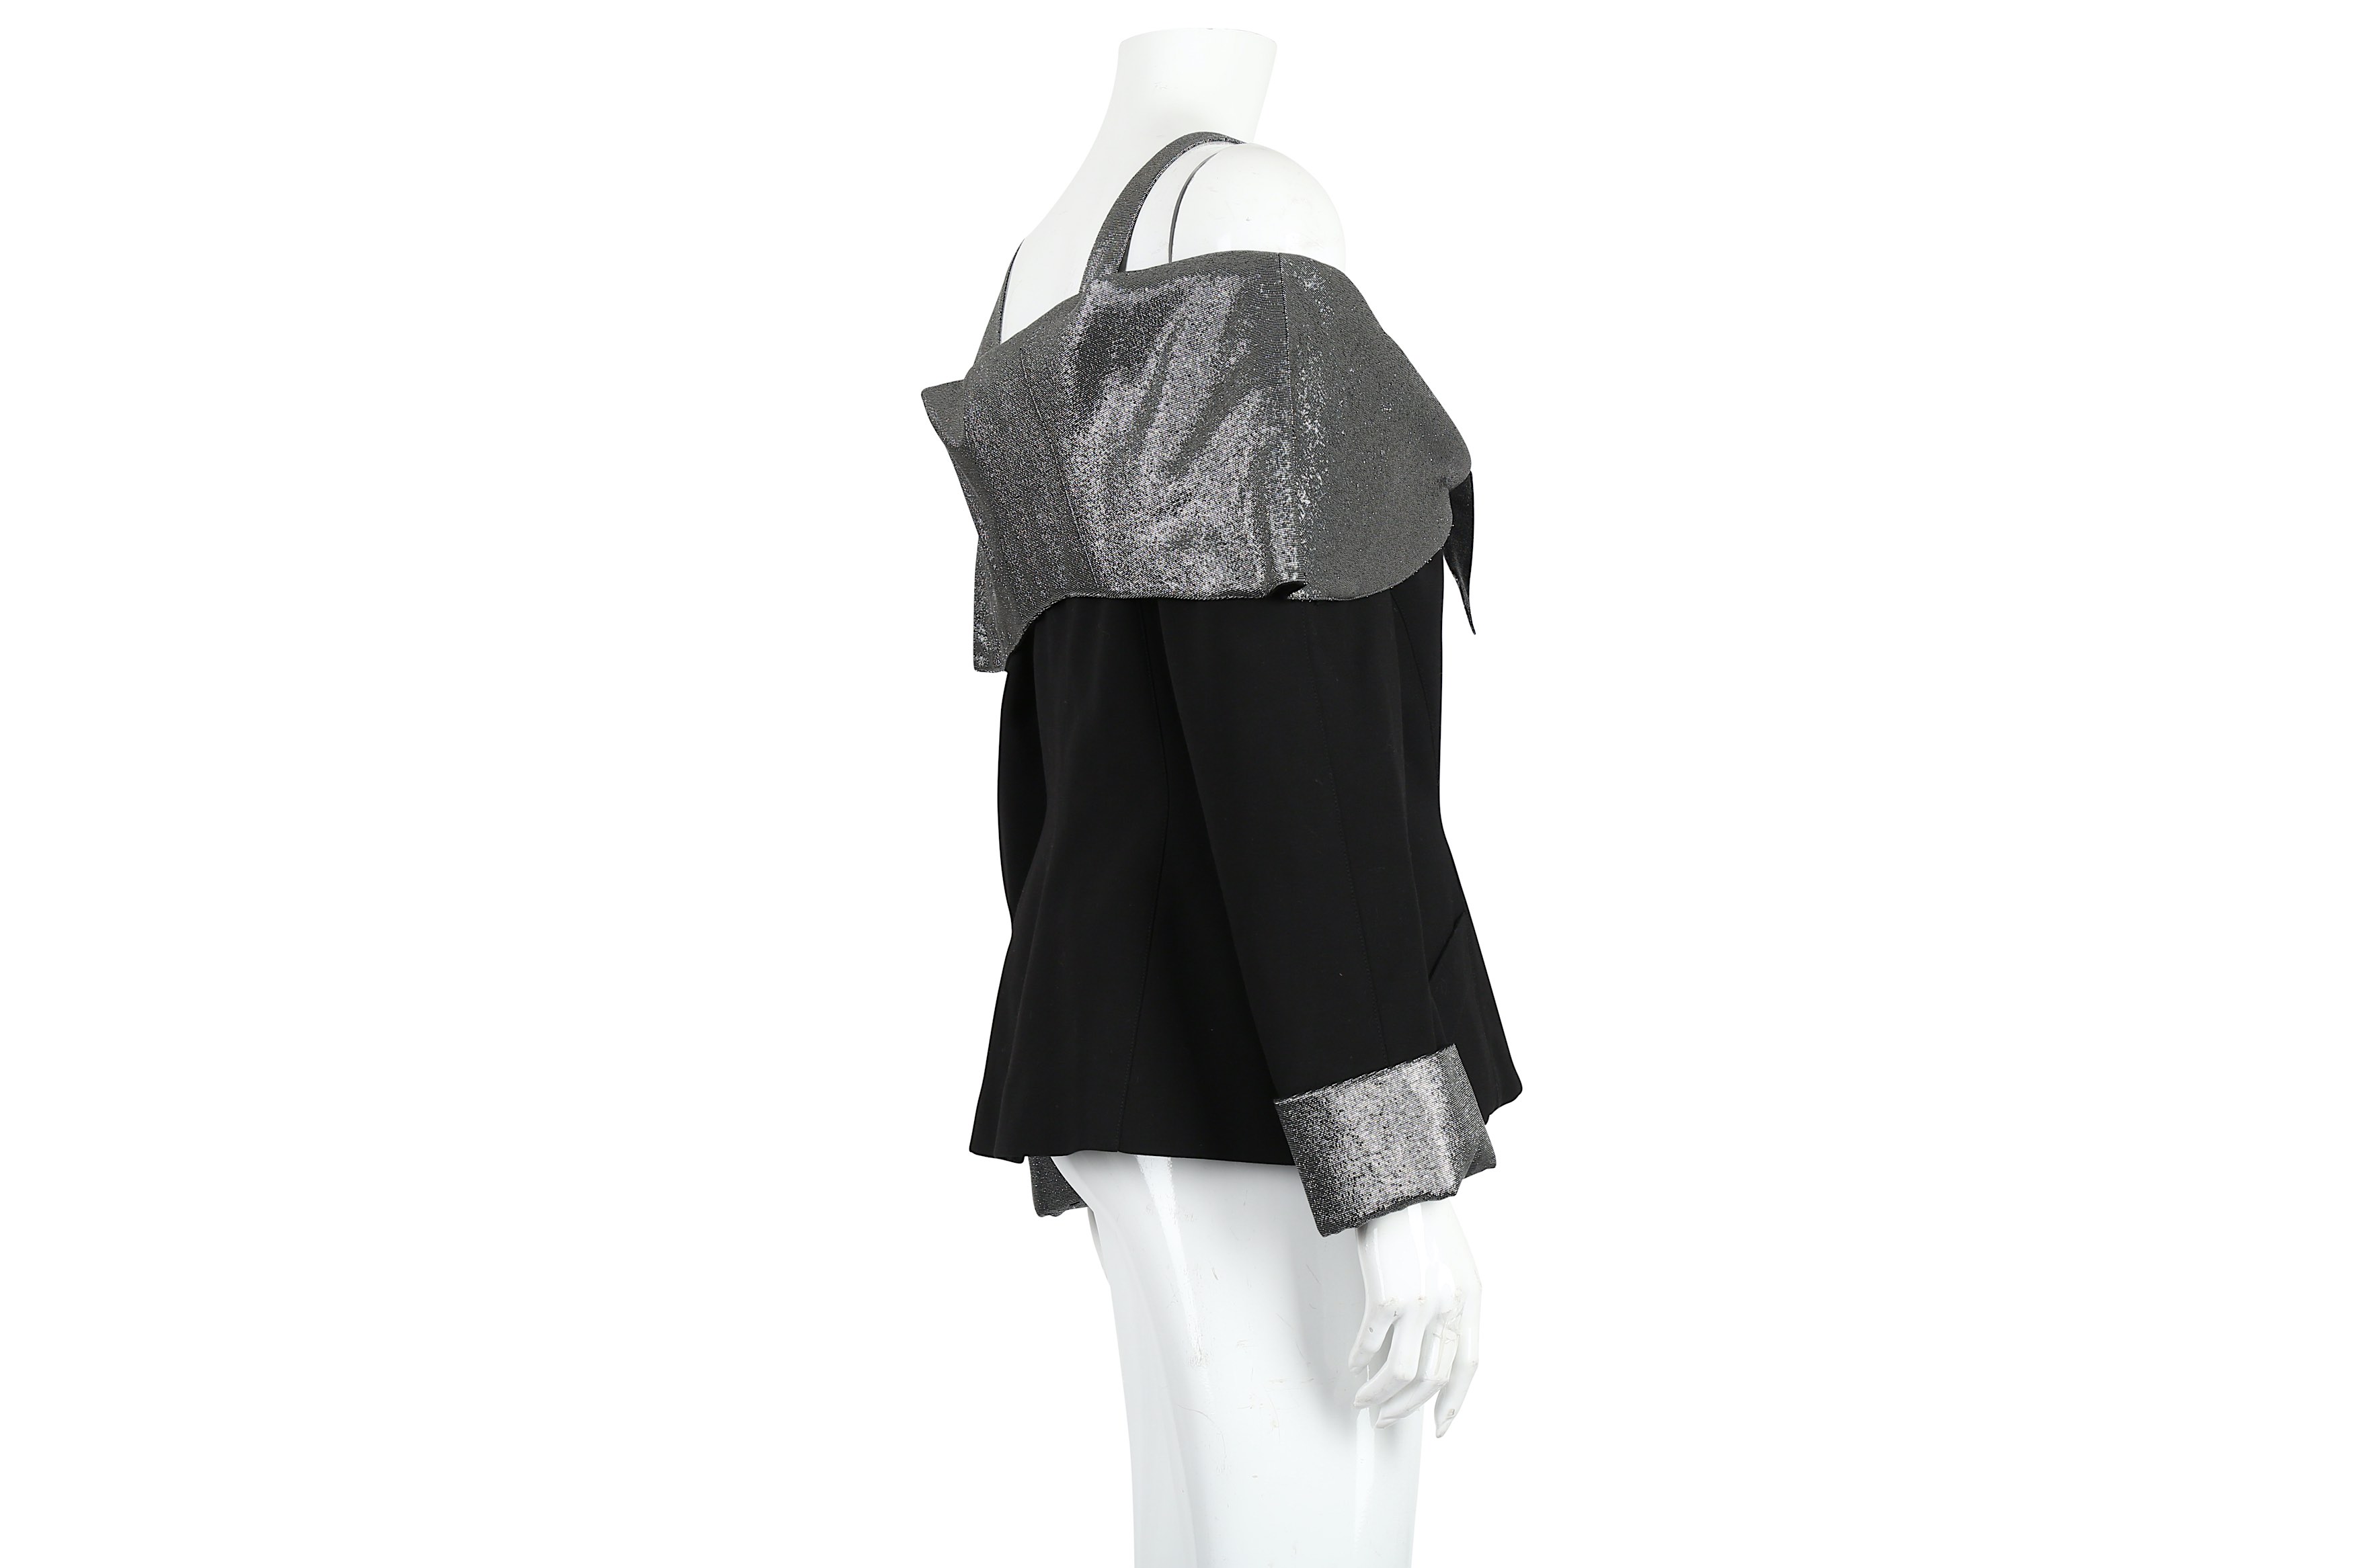 Thierry Mugler Black Off Shoulder Jacket - Size 42 - Image 2 of 4